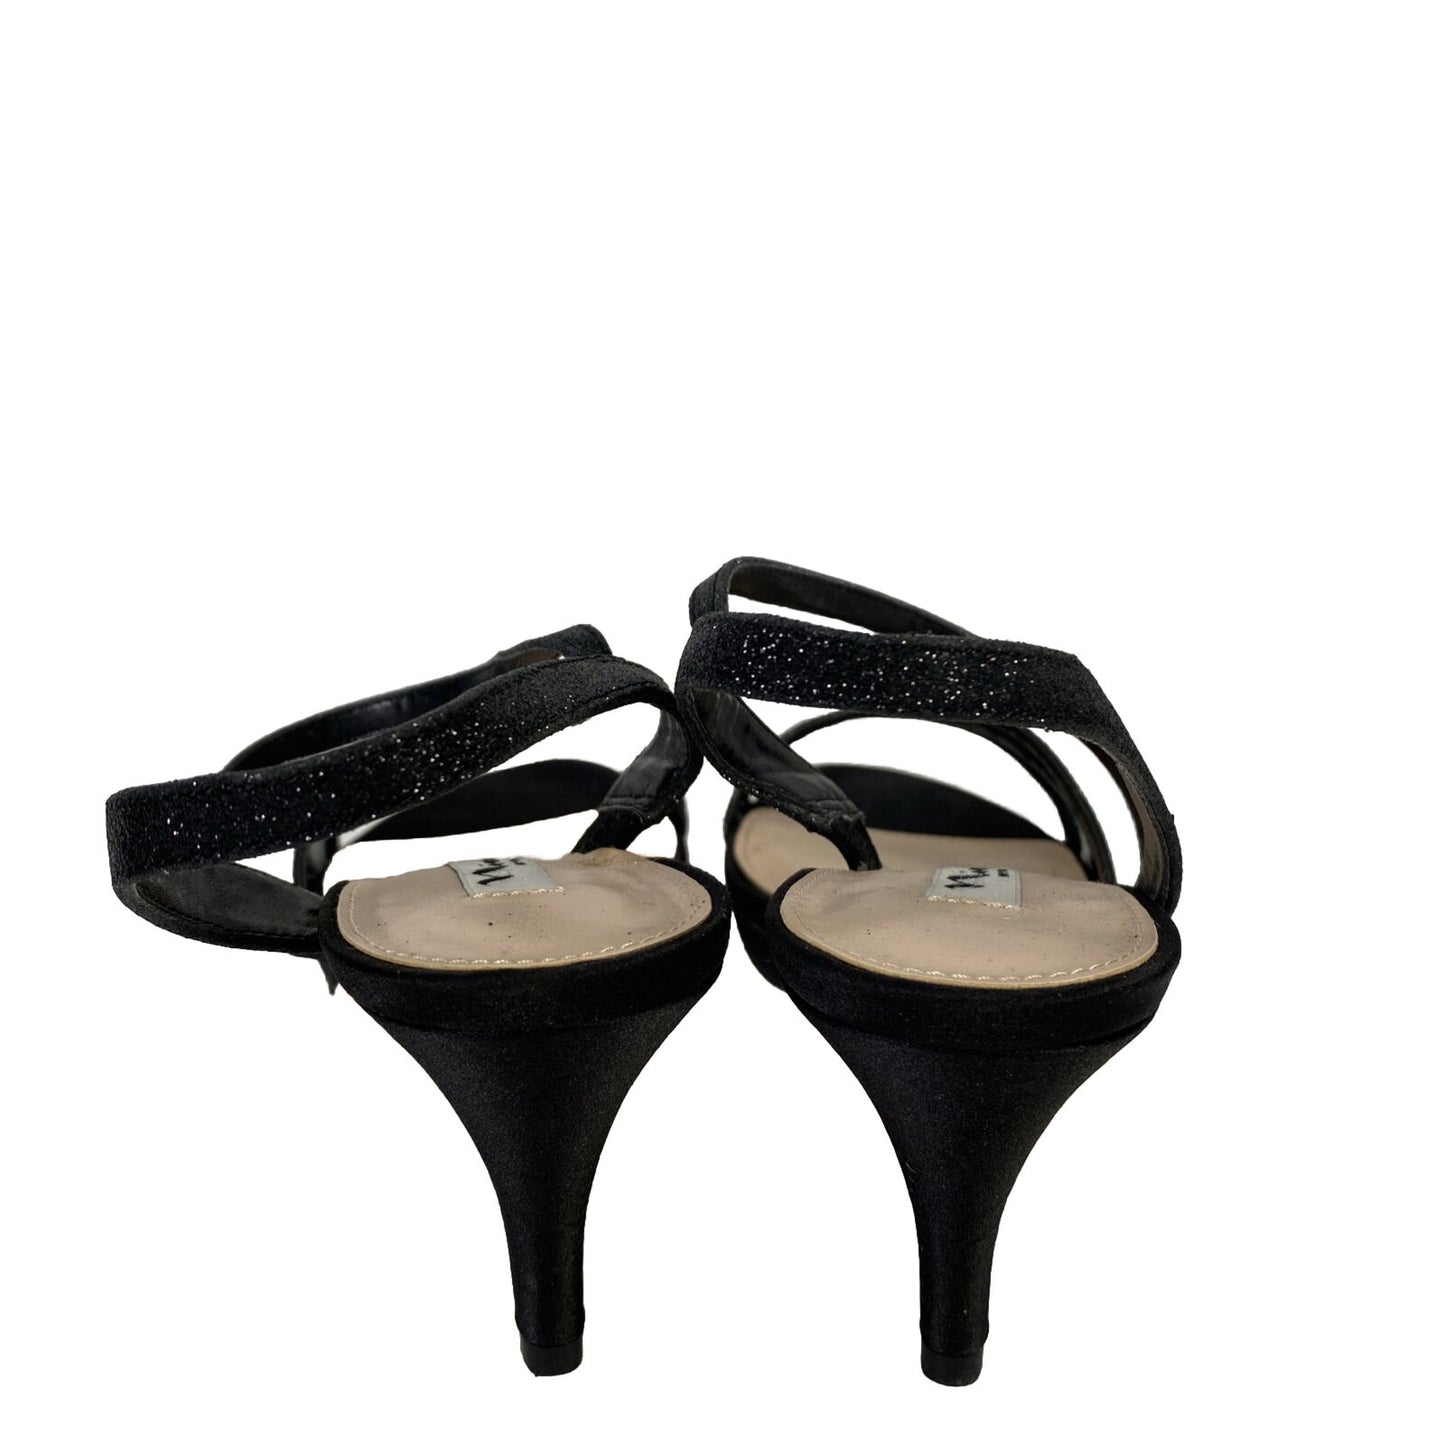 Nina Women's Black Glitter Stappy Open Toe Heels - 8.5 M